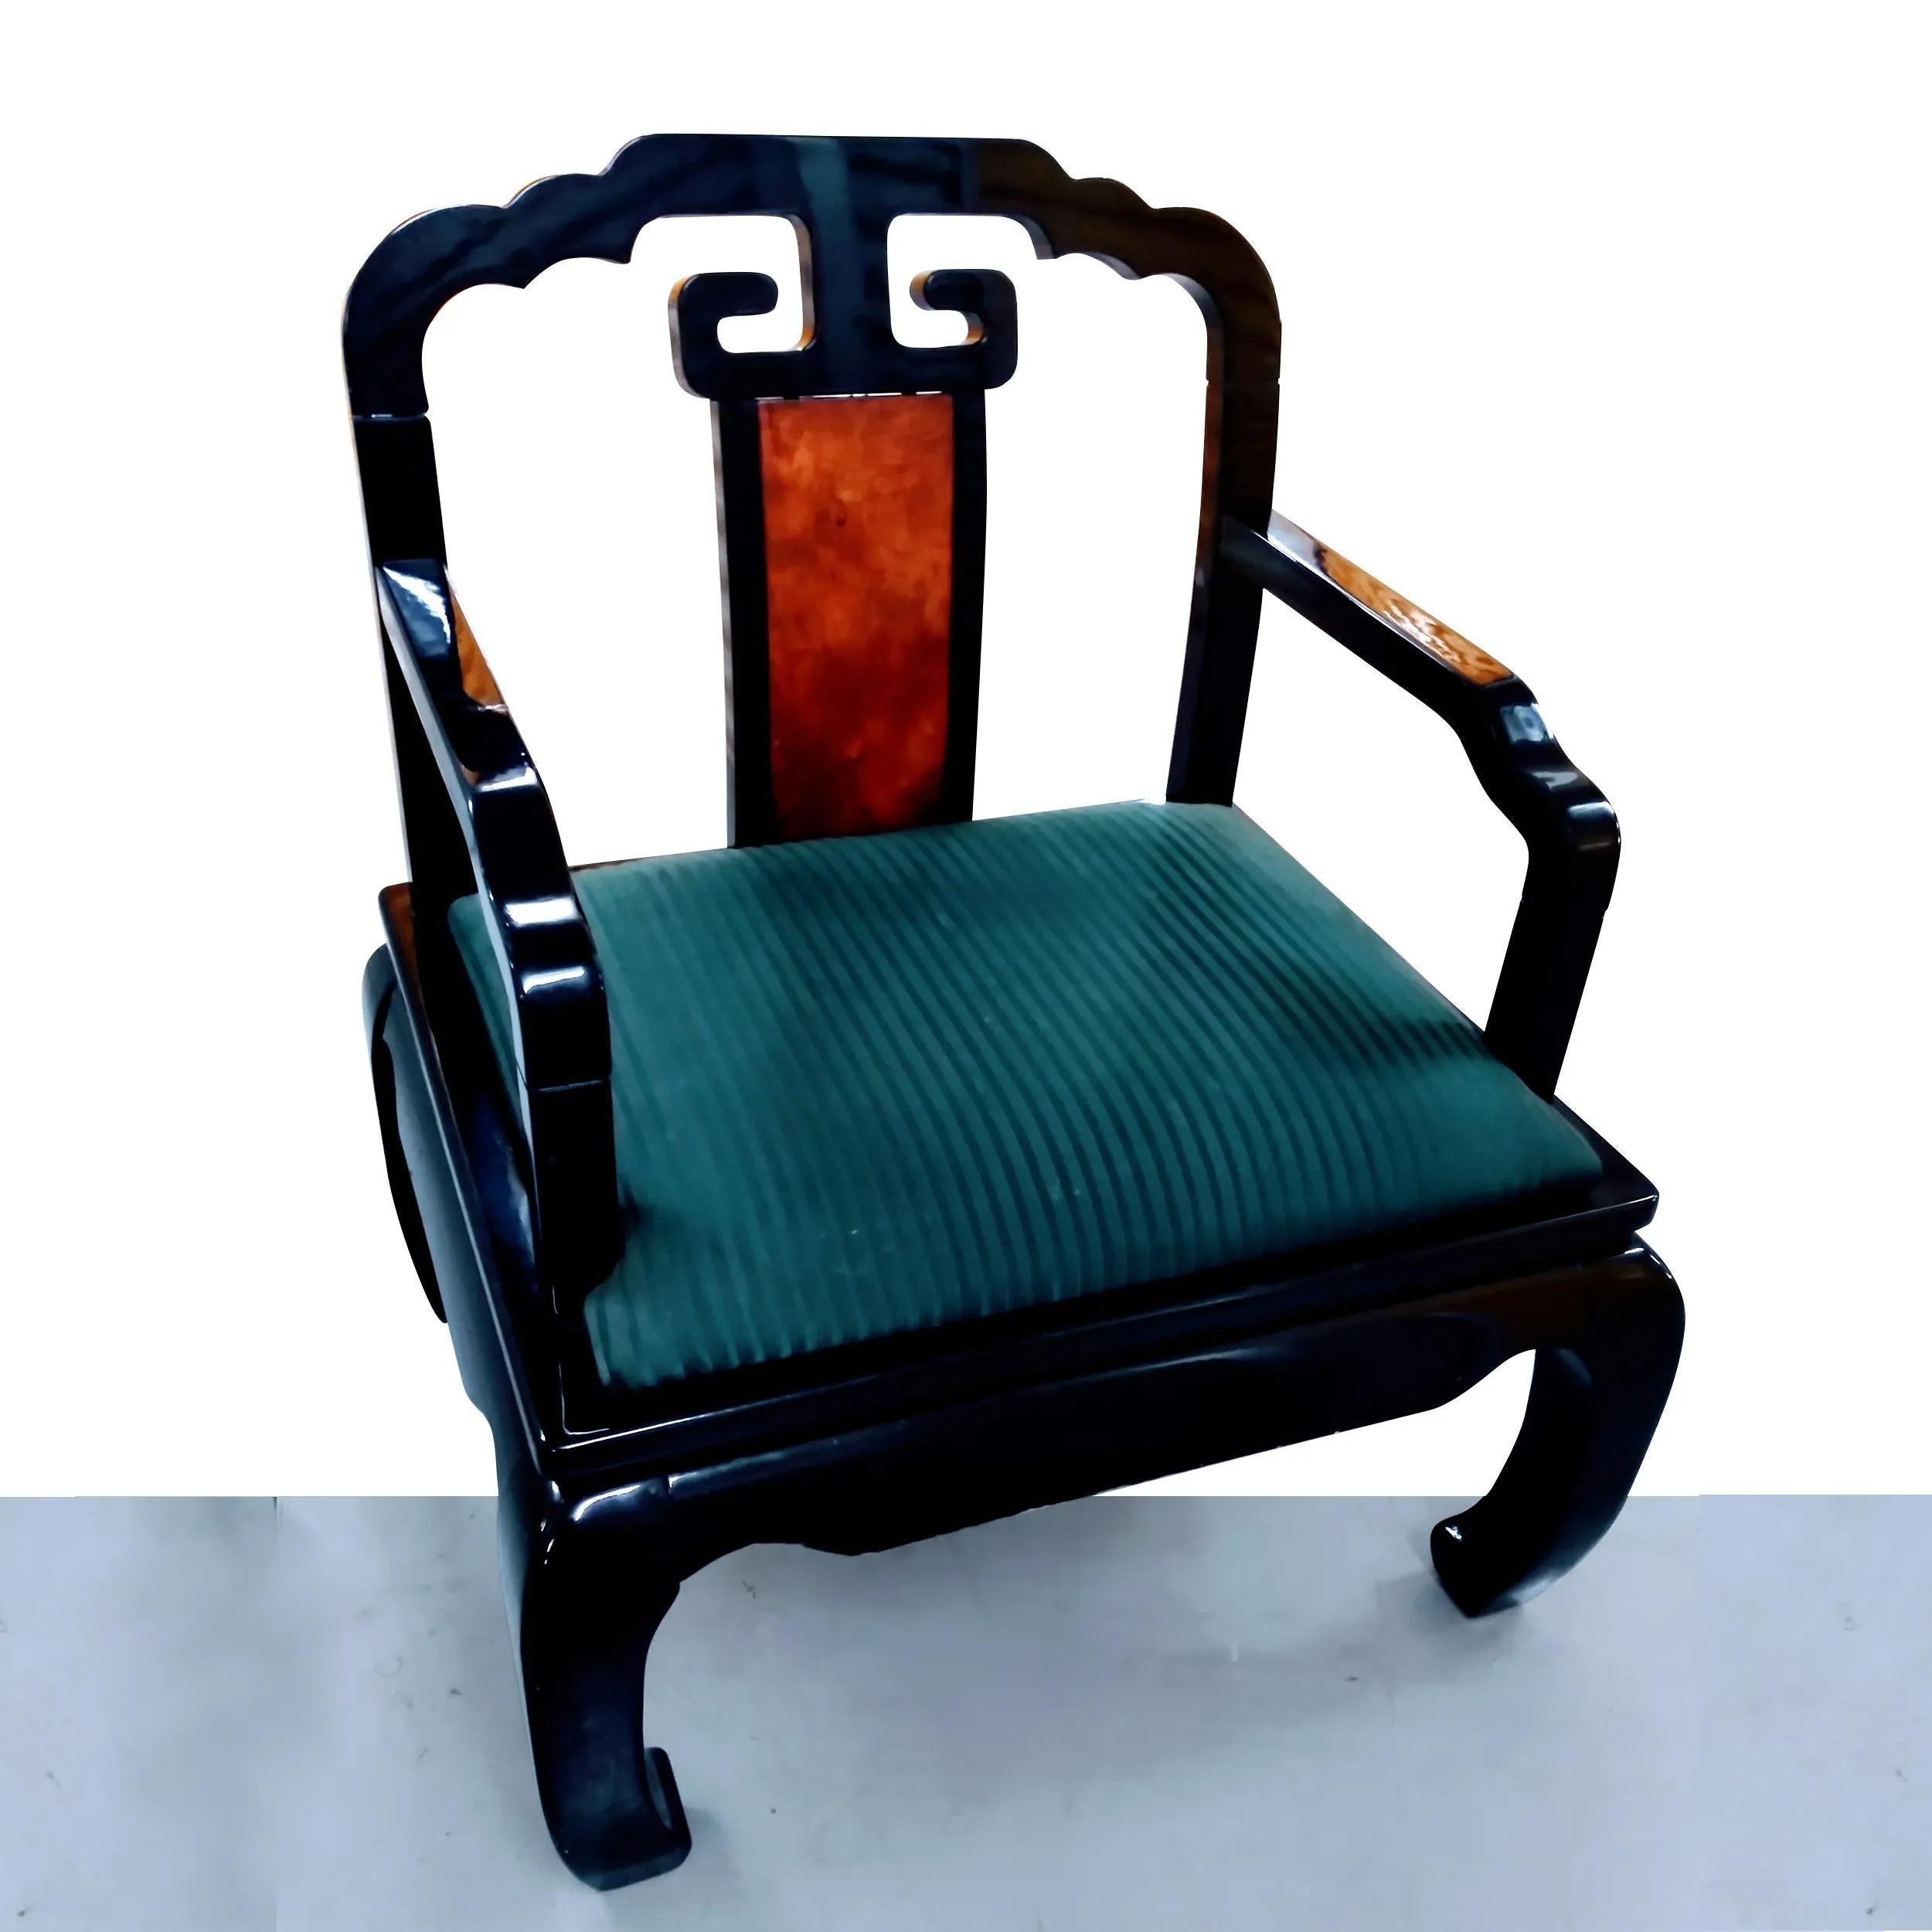 L'élégant fauteuil de style Ming illuminera n'importe quelle pièce.